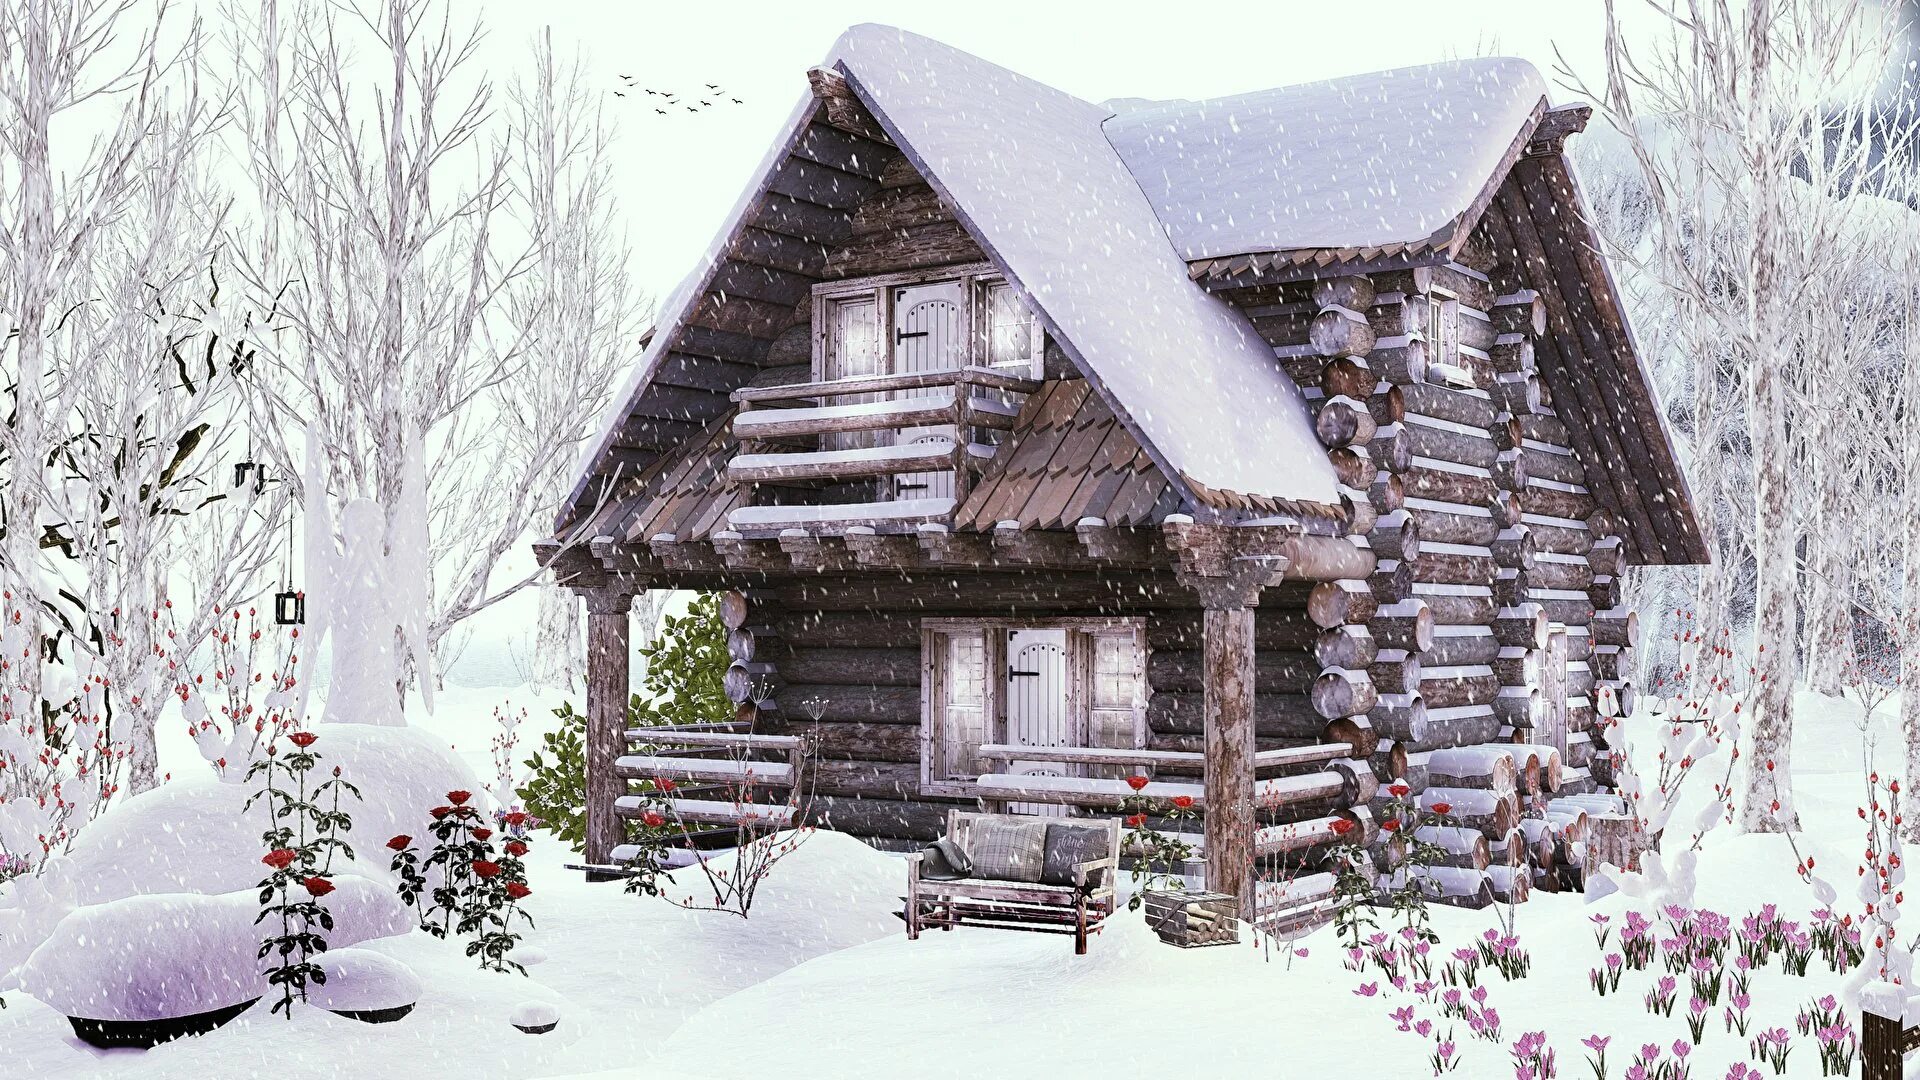 Дом зимой. Зимний домик. Деревенский домик зимой. Домик в зимнем лесу. Зайдешь в такую избушку зимой жилым